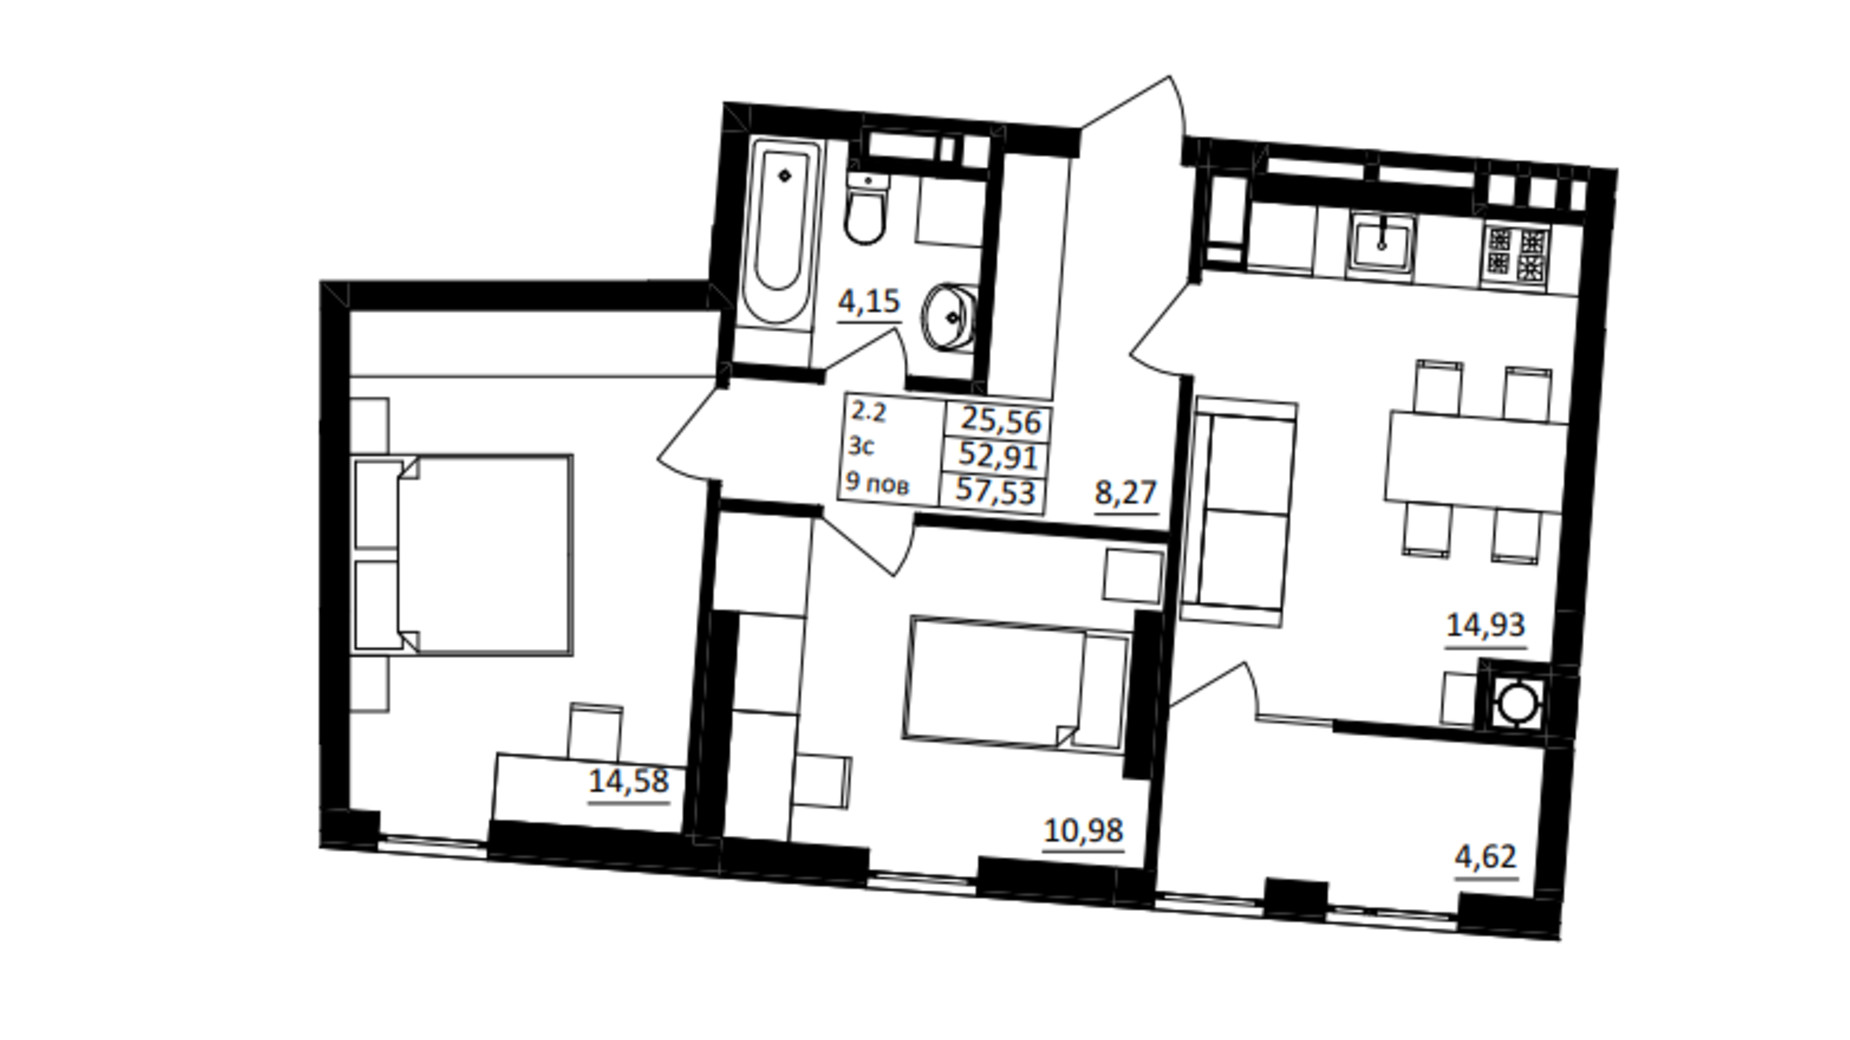 Планировка 2-комнатной квартиры в ЖК Обуховский ключ 57.53 м², фото 680350